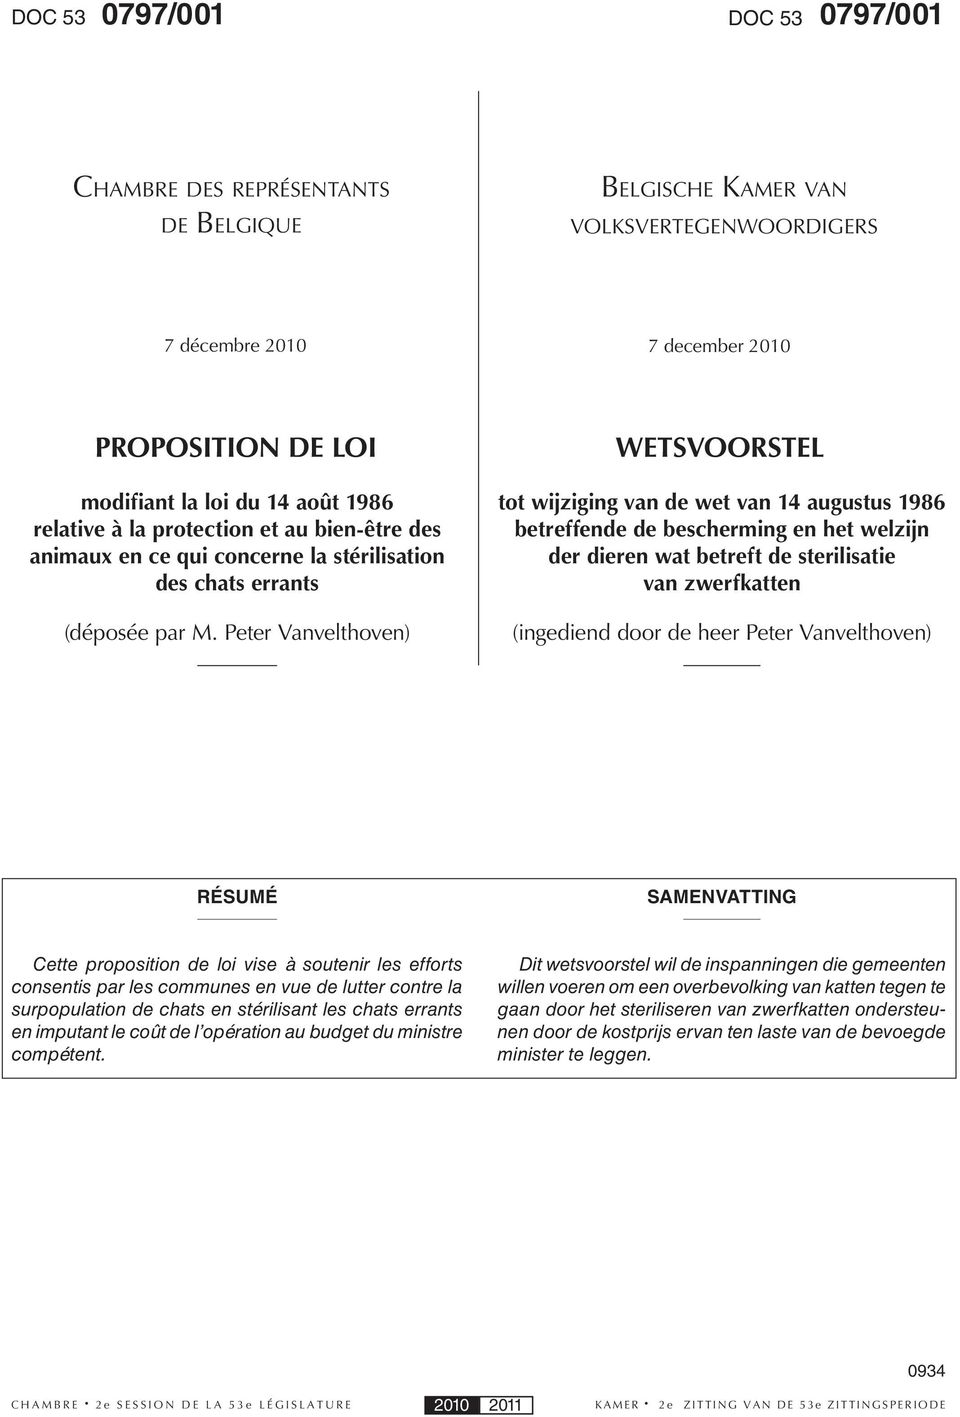 Peter Vanvelthoven) WETSVOORSTEL tot wijziging van de wet van 14 augustus 1986 betreffende de bescherming en het welzijn der dieren wat betreft de sterilisatie van zwerfkatten (ingediend door de heer